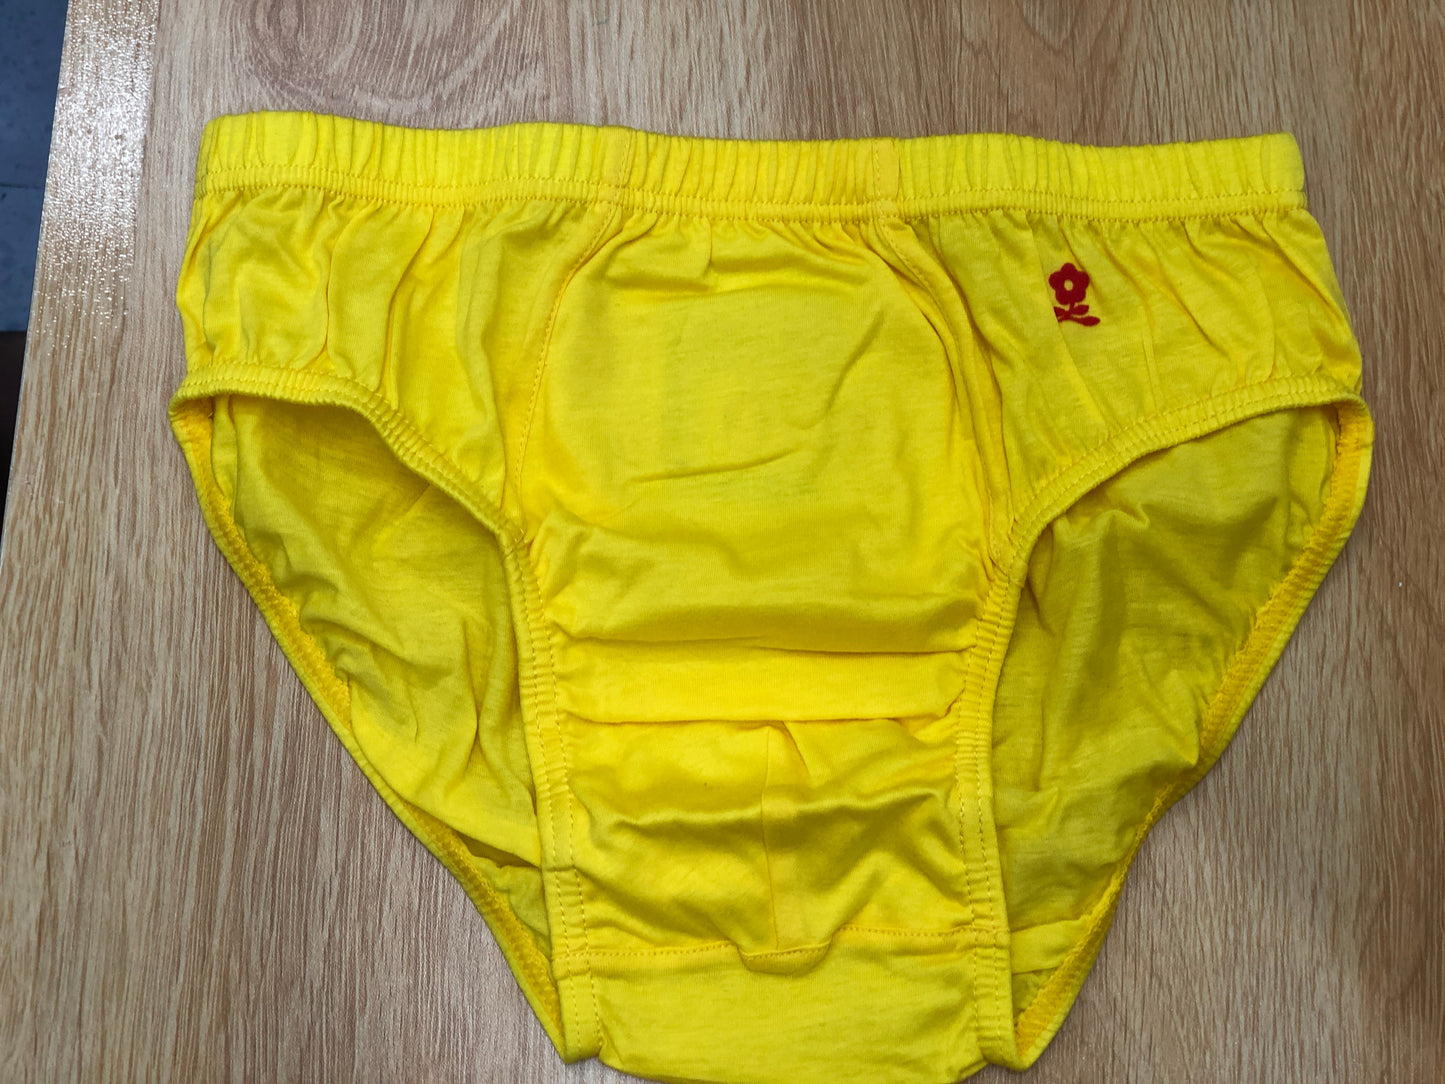 02款男裝三角型內褲-黃色